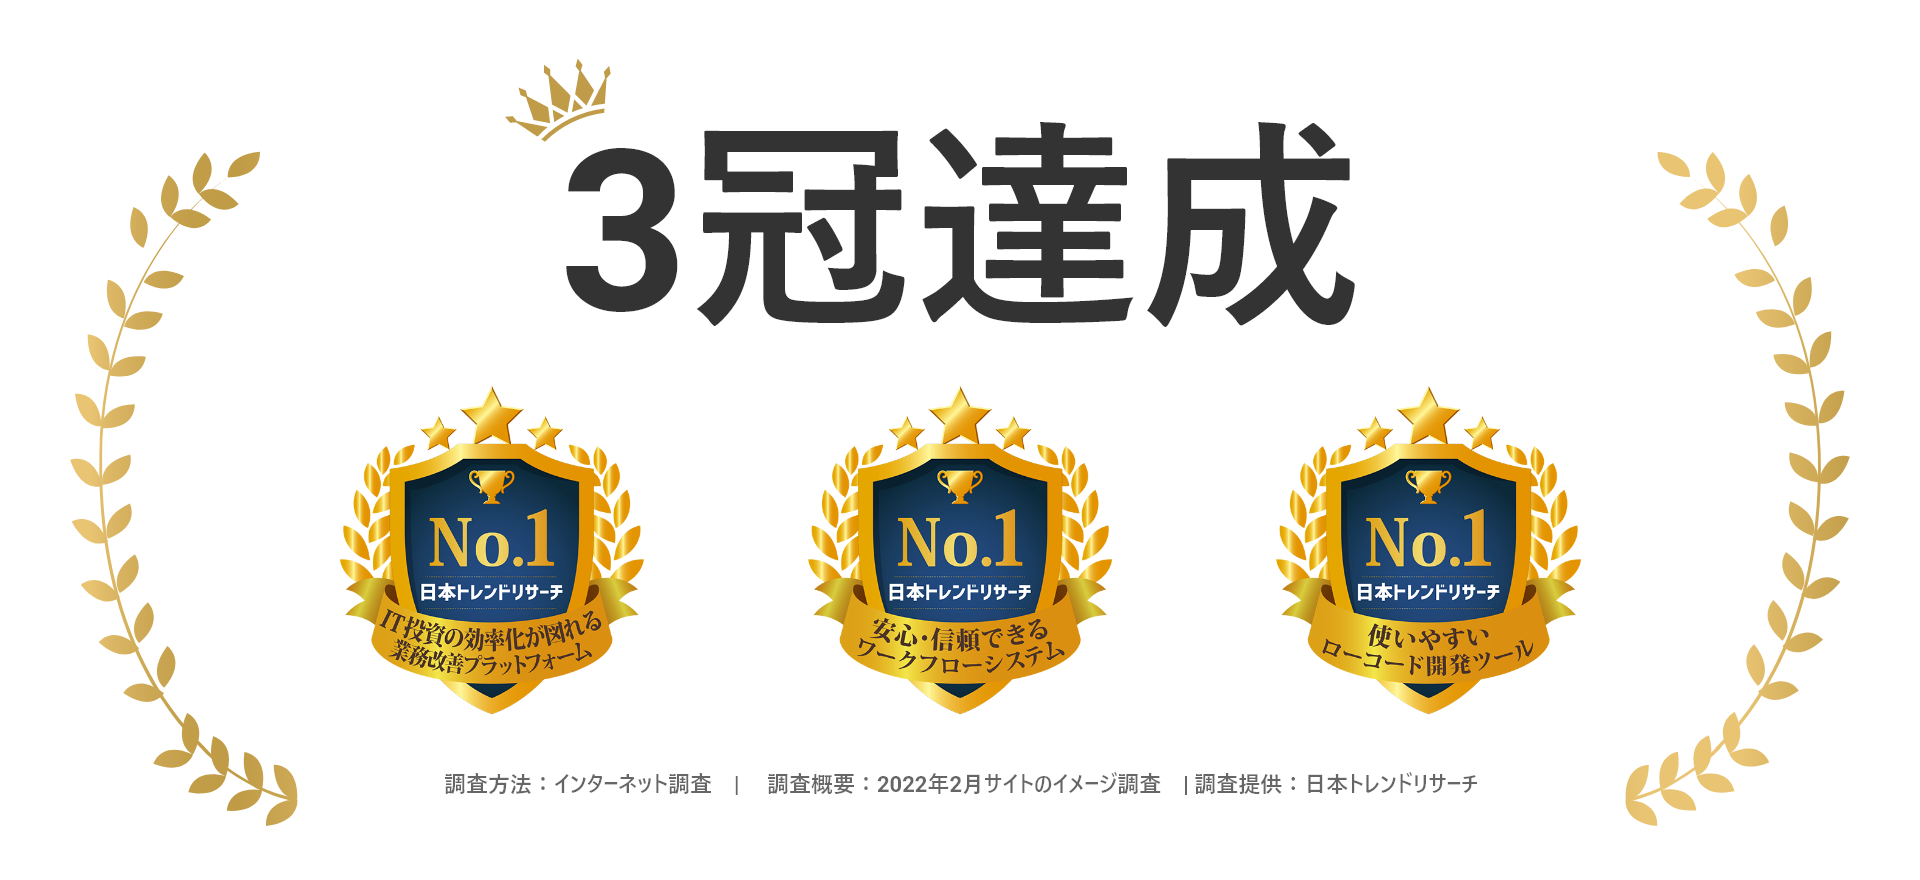 日本トレンドリサーチの調査にて「intra-mart®」が3冠達成